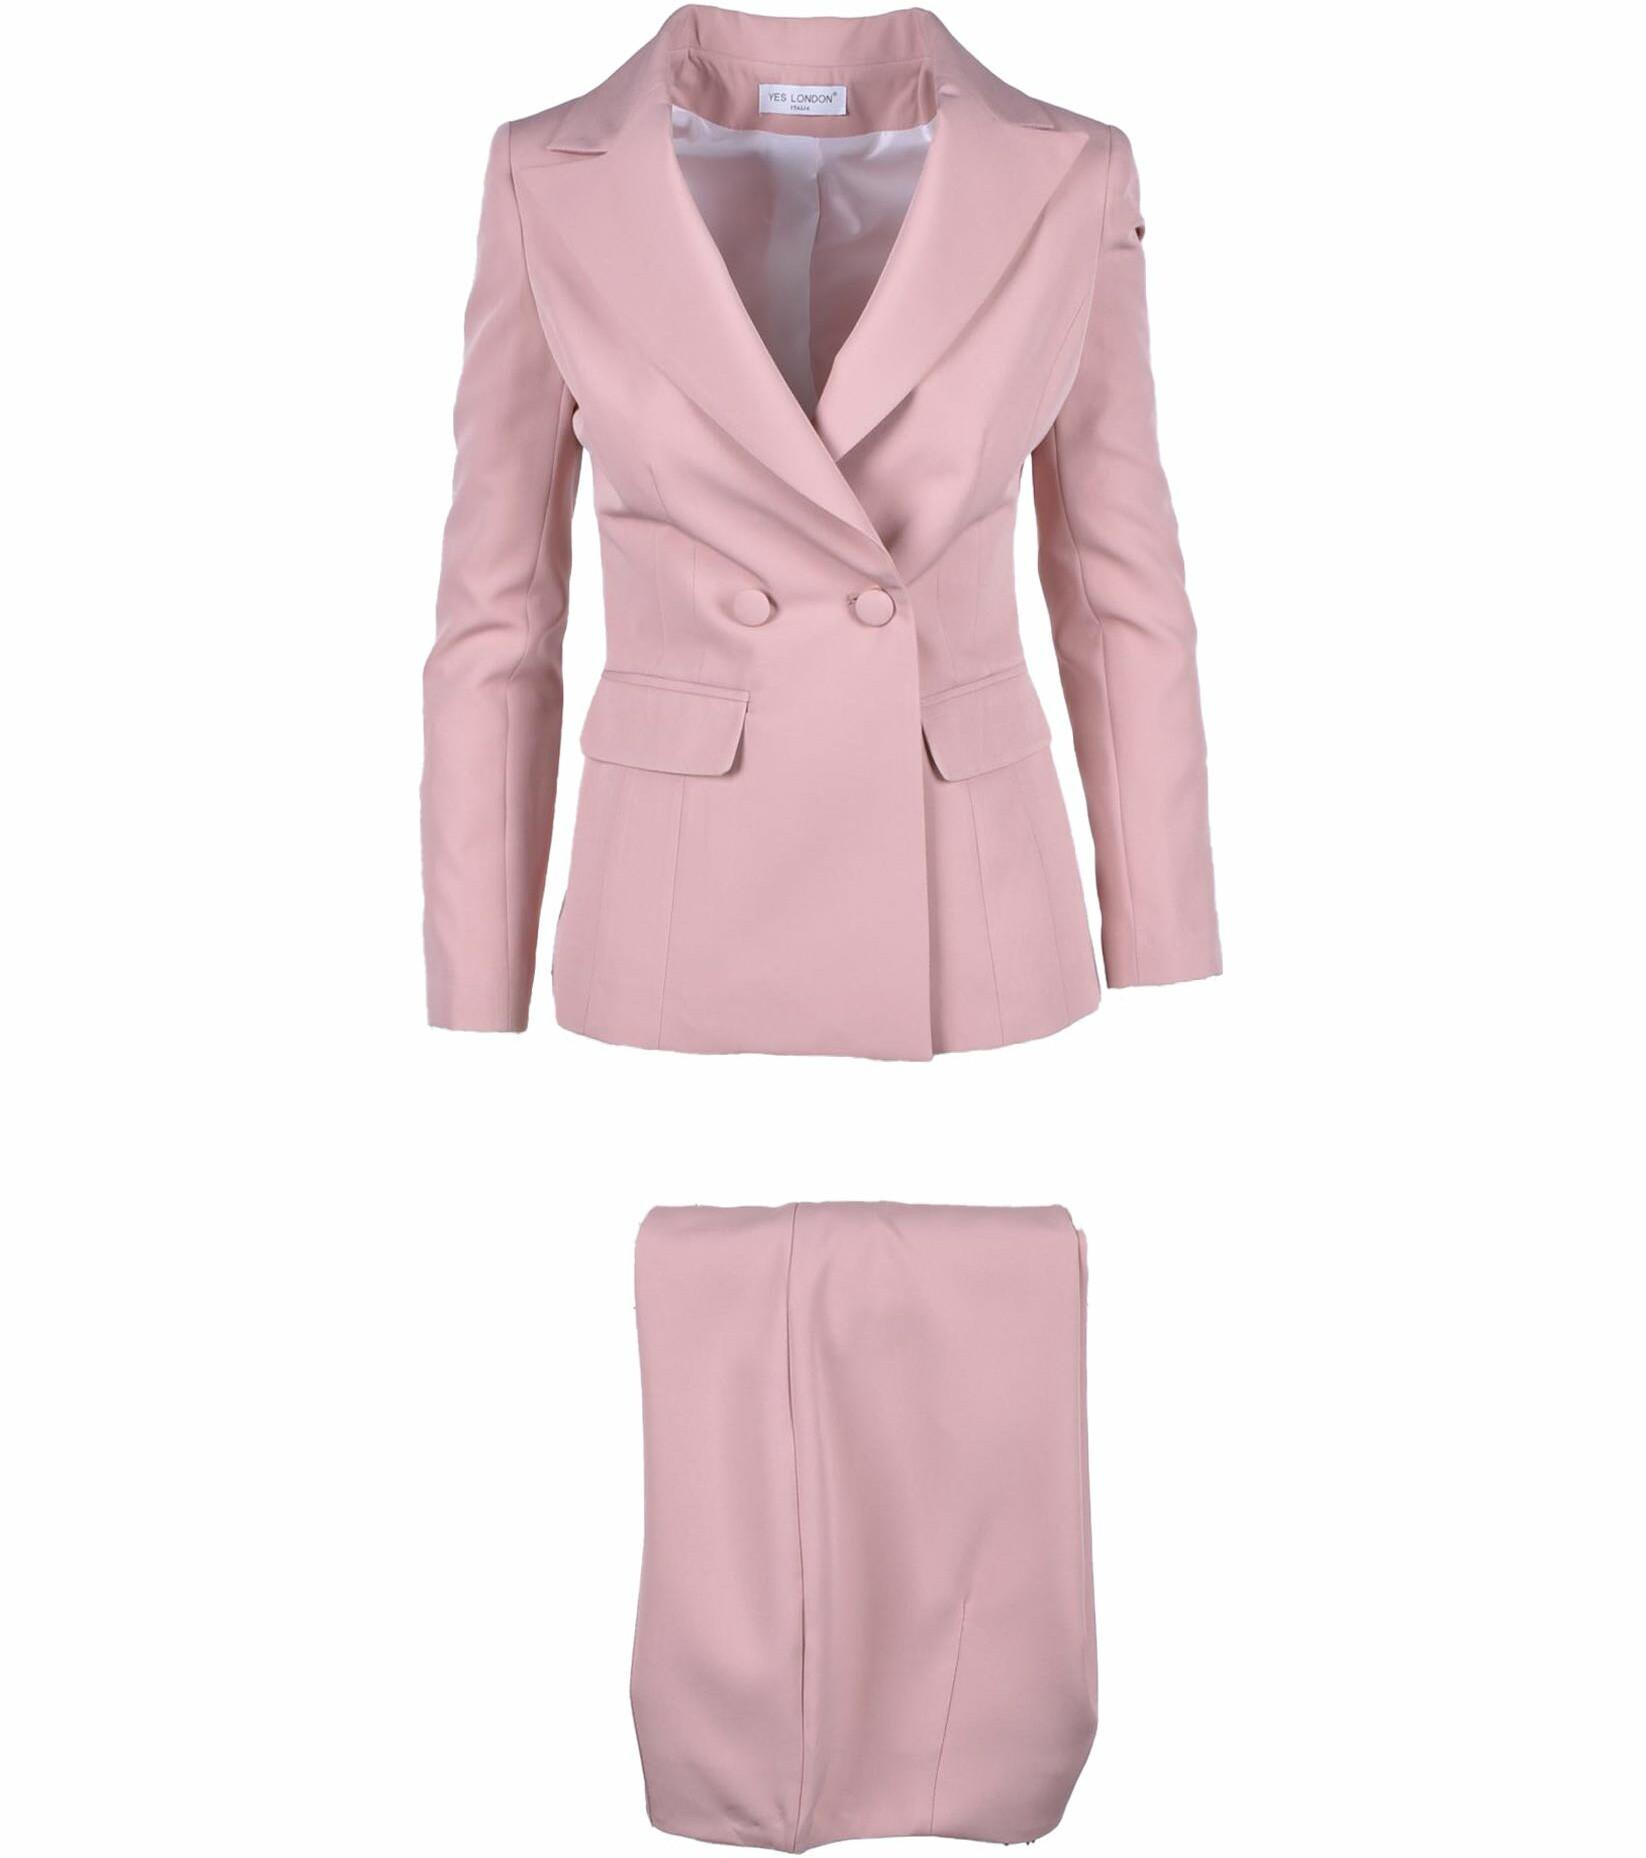 Women's Antique Pink Suit